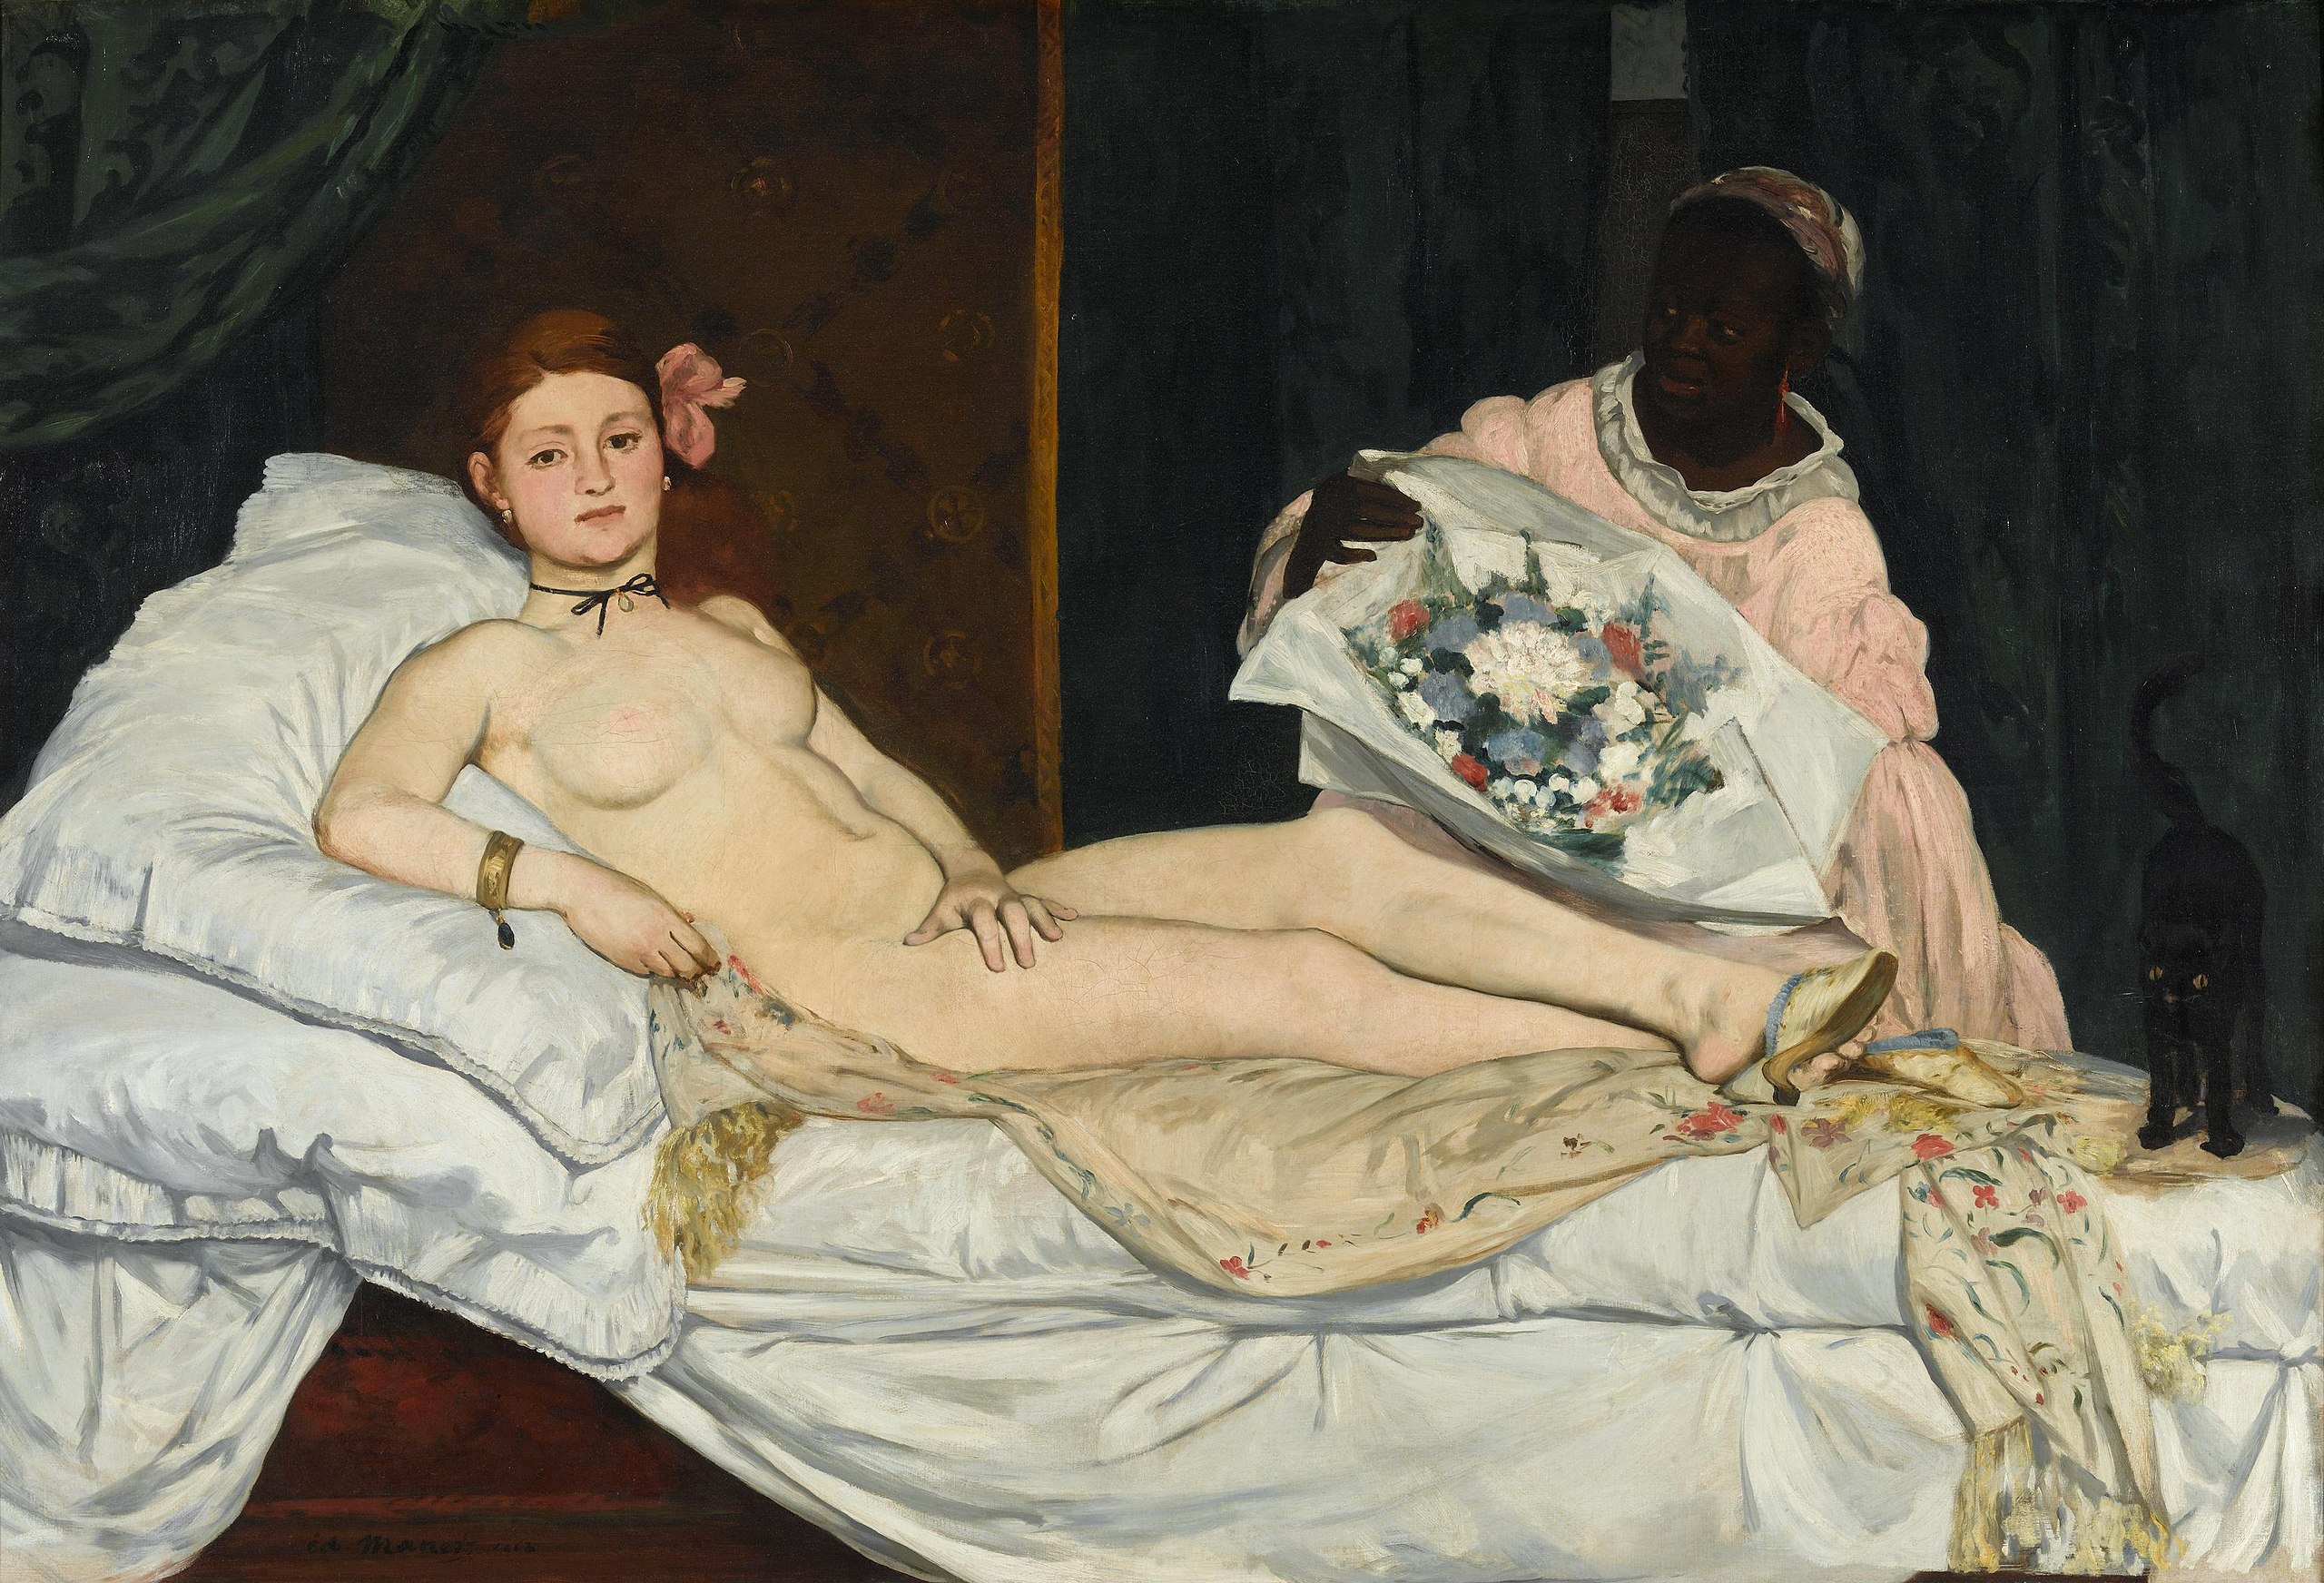 奧林匹亞 by Édouard Manet - 1863 - 190 x 130 cm 